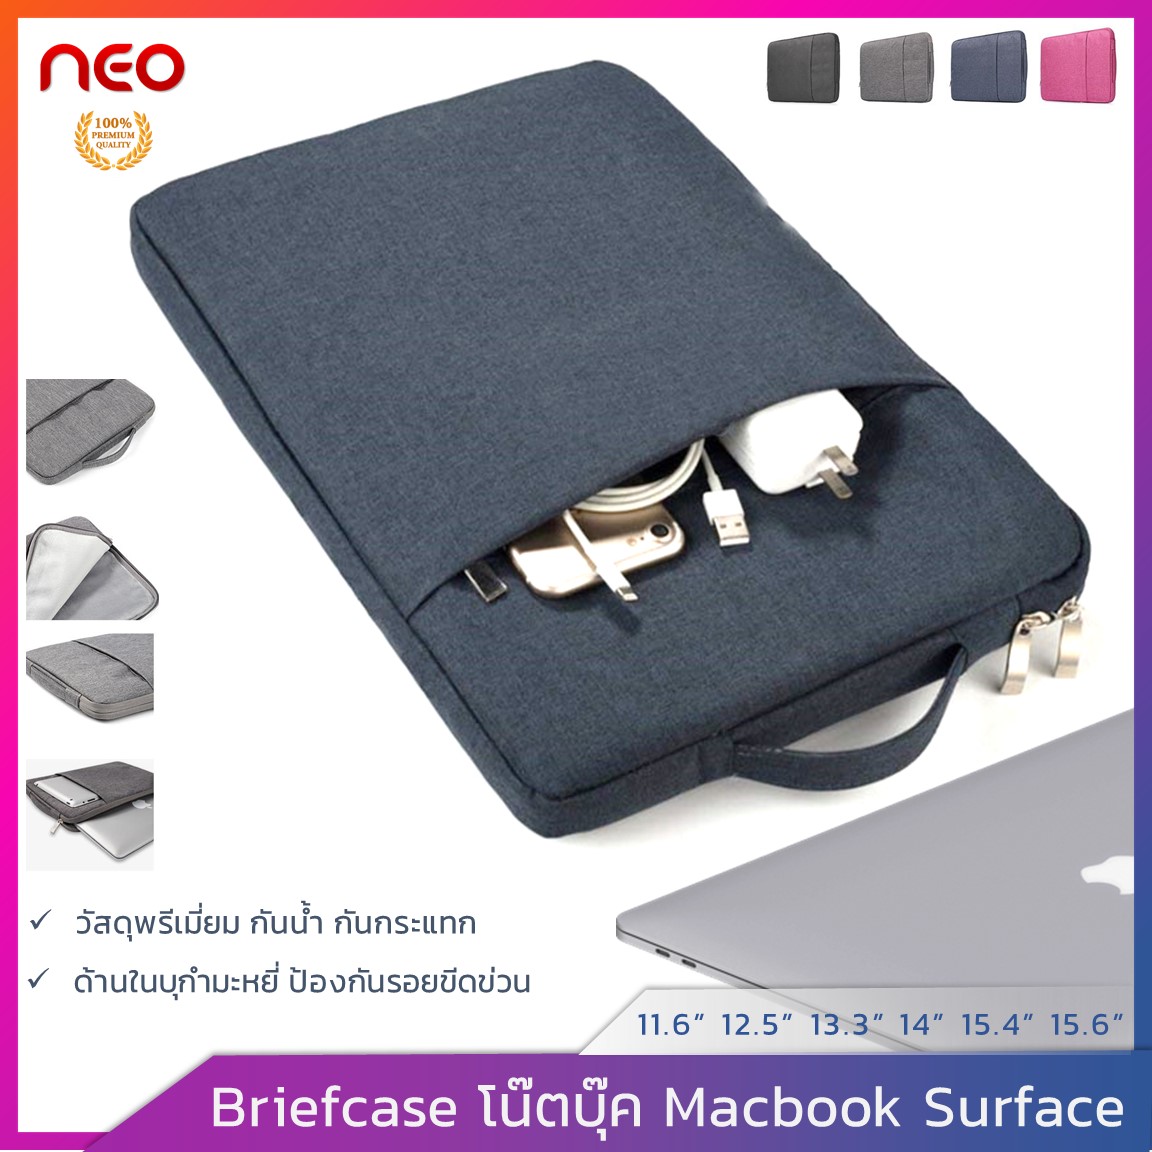 NEO กระเป๋าโน๊ตบุ๊ค เคสแล็ปท็อป soft case เคสโน๊ตบุ๊ค Surface เคสMacbook Air Pro 11.6 12.5 13.3  14 15.6 นิ้ว ซองใส่โน๊ตบุ๊คกันรอย กันน้ำ ซองแล็ปท็อป Briefcase Laptop Bag